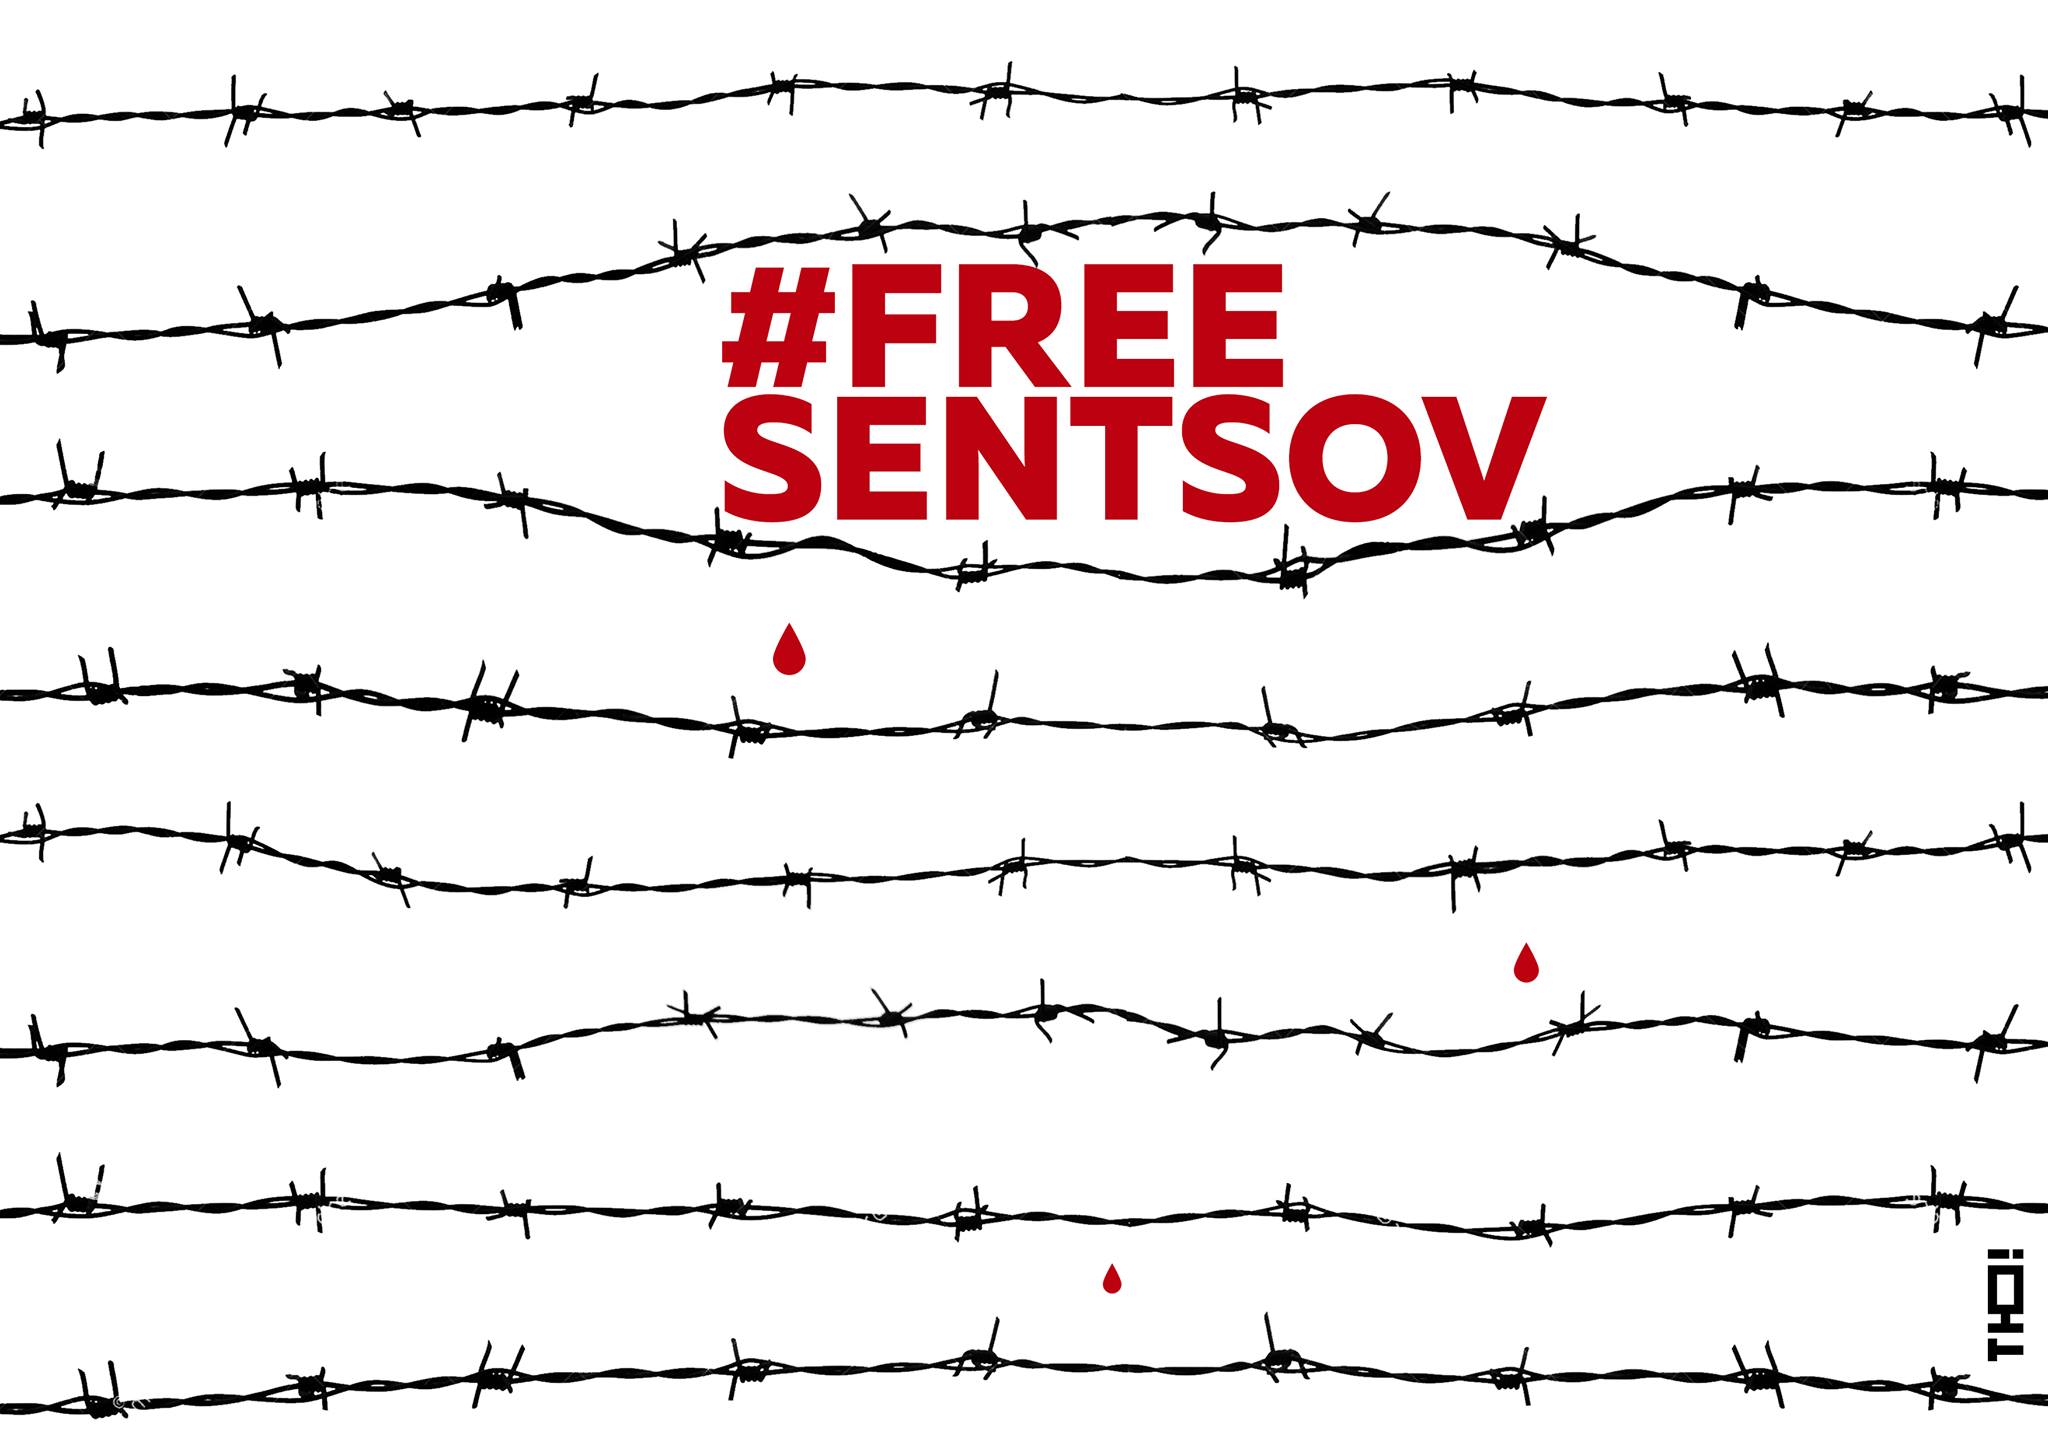 постер для мариупольской акции в поддержку Сенцова. Источник: Платформа ТЮ, facebook